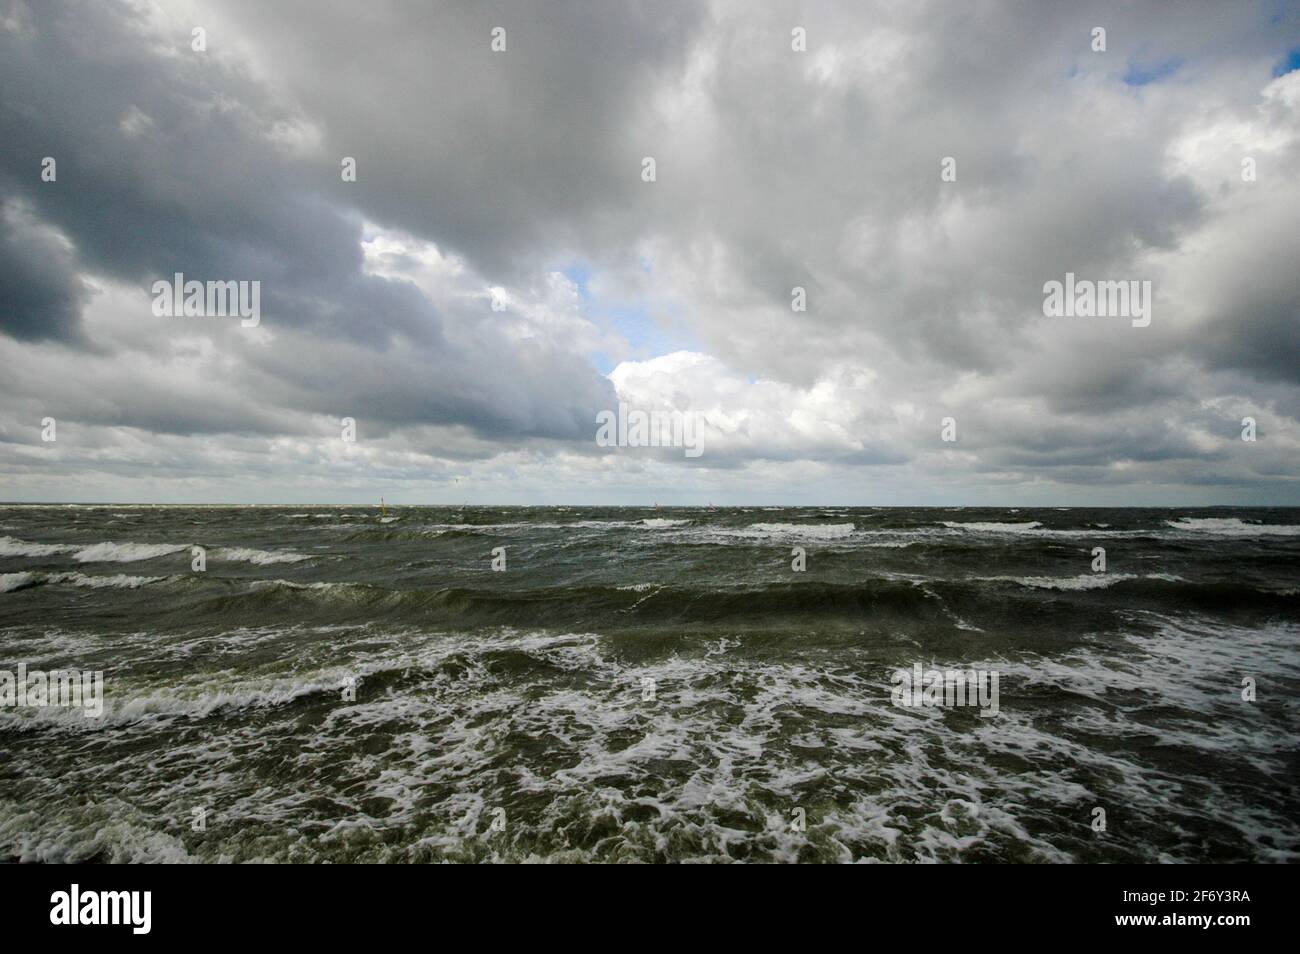 Ein heraufziehender Sturm kündigt sich mit dunklen Wolken über den Küstengewässern von Rügen an - storm coming up with dark clouds over the coastal waters of Ruegen island. Stock Photo